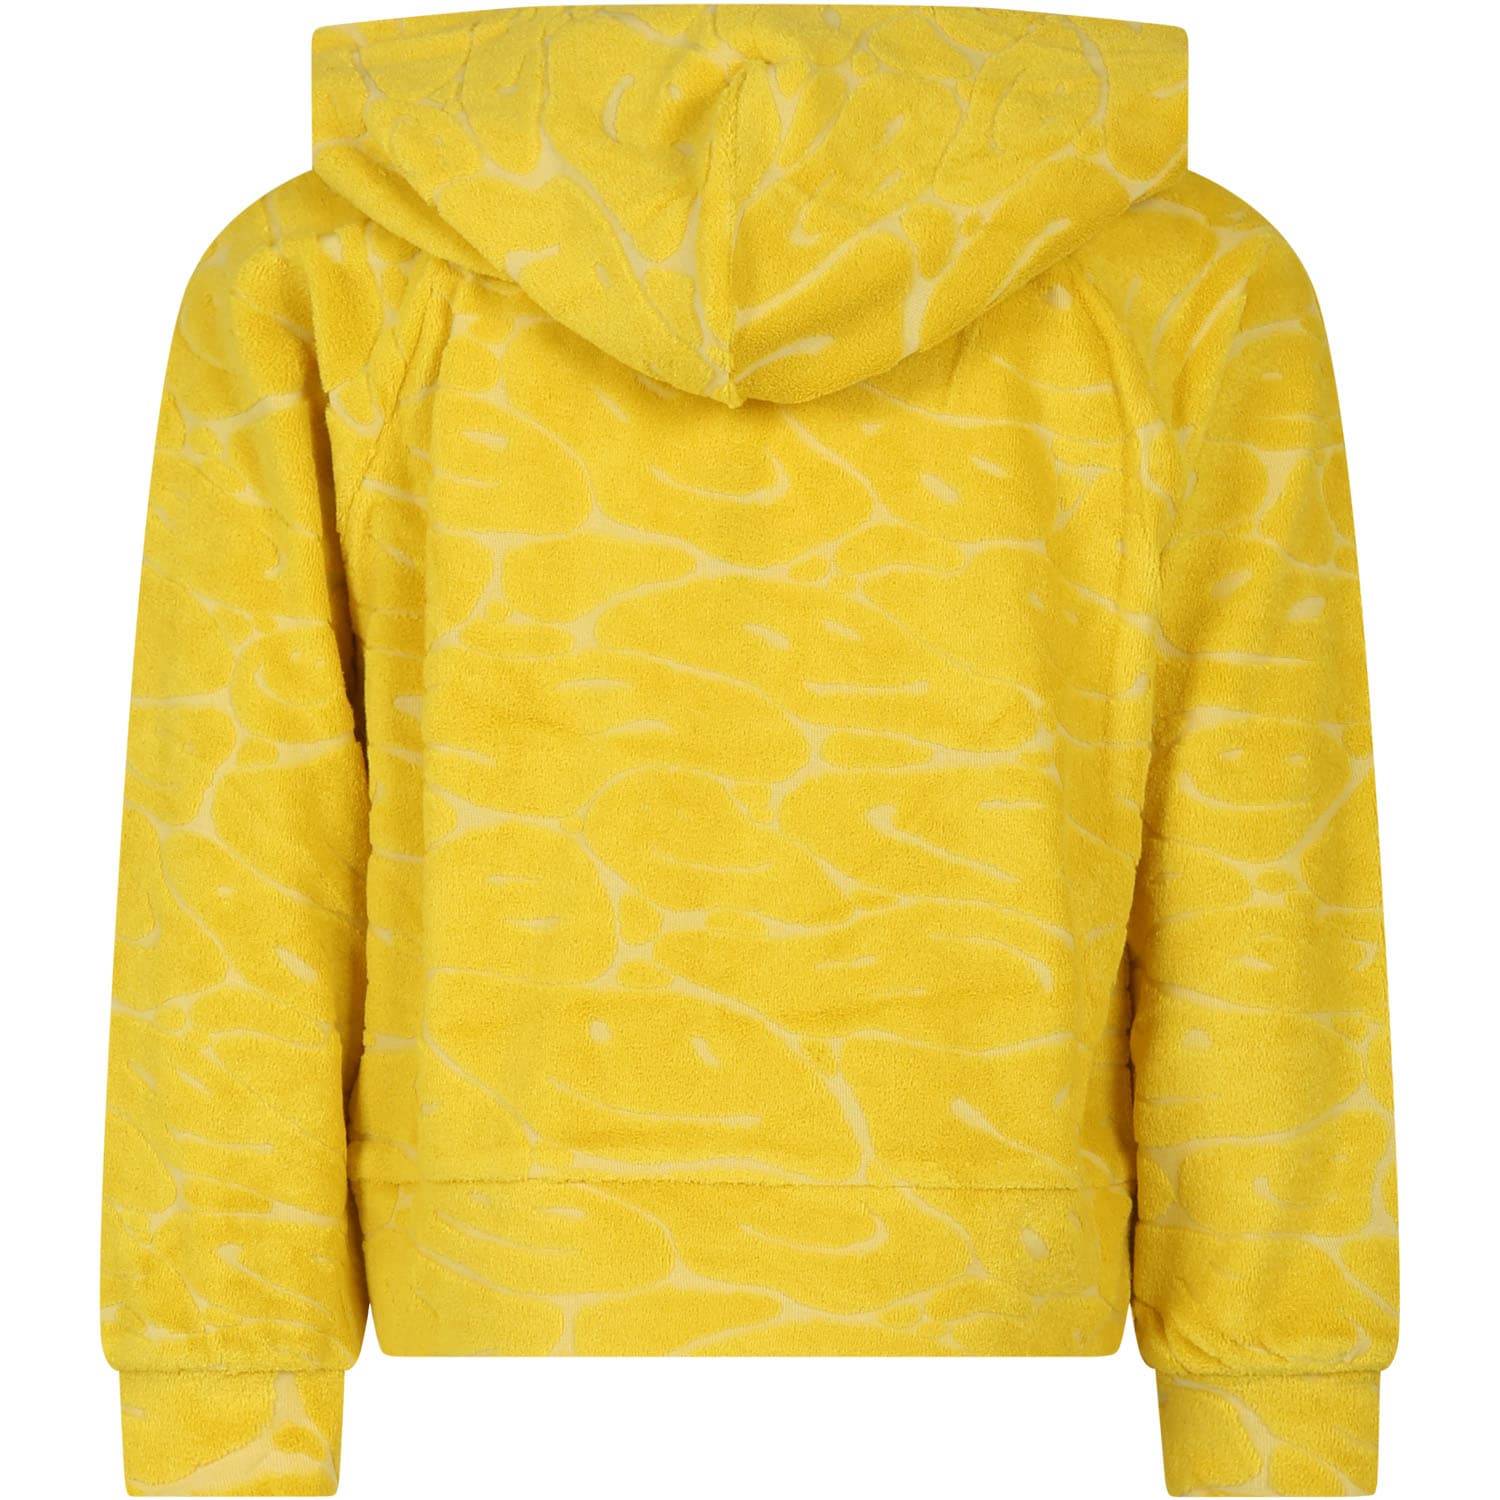 Shop Molo Yellow Sweatshirt For Girl With Smiley